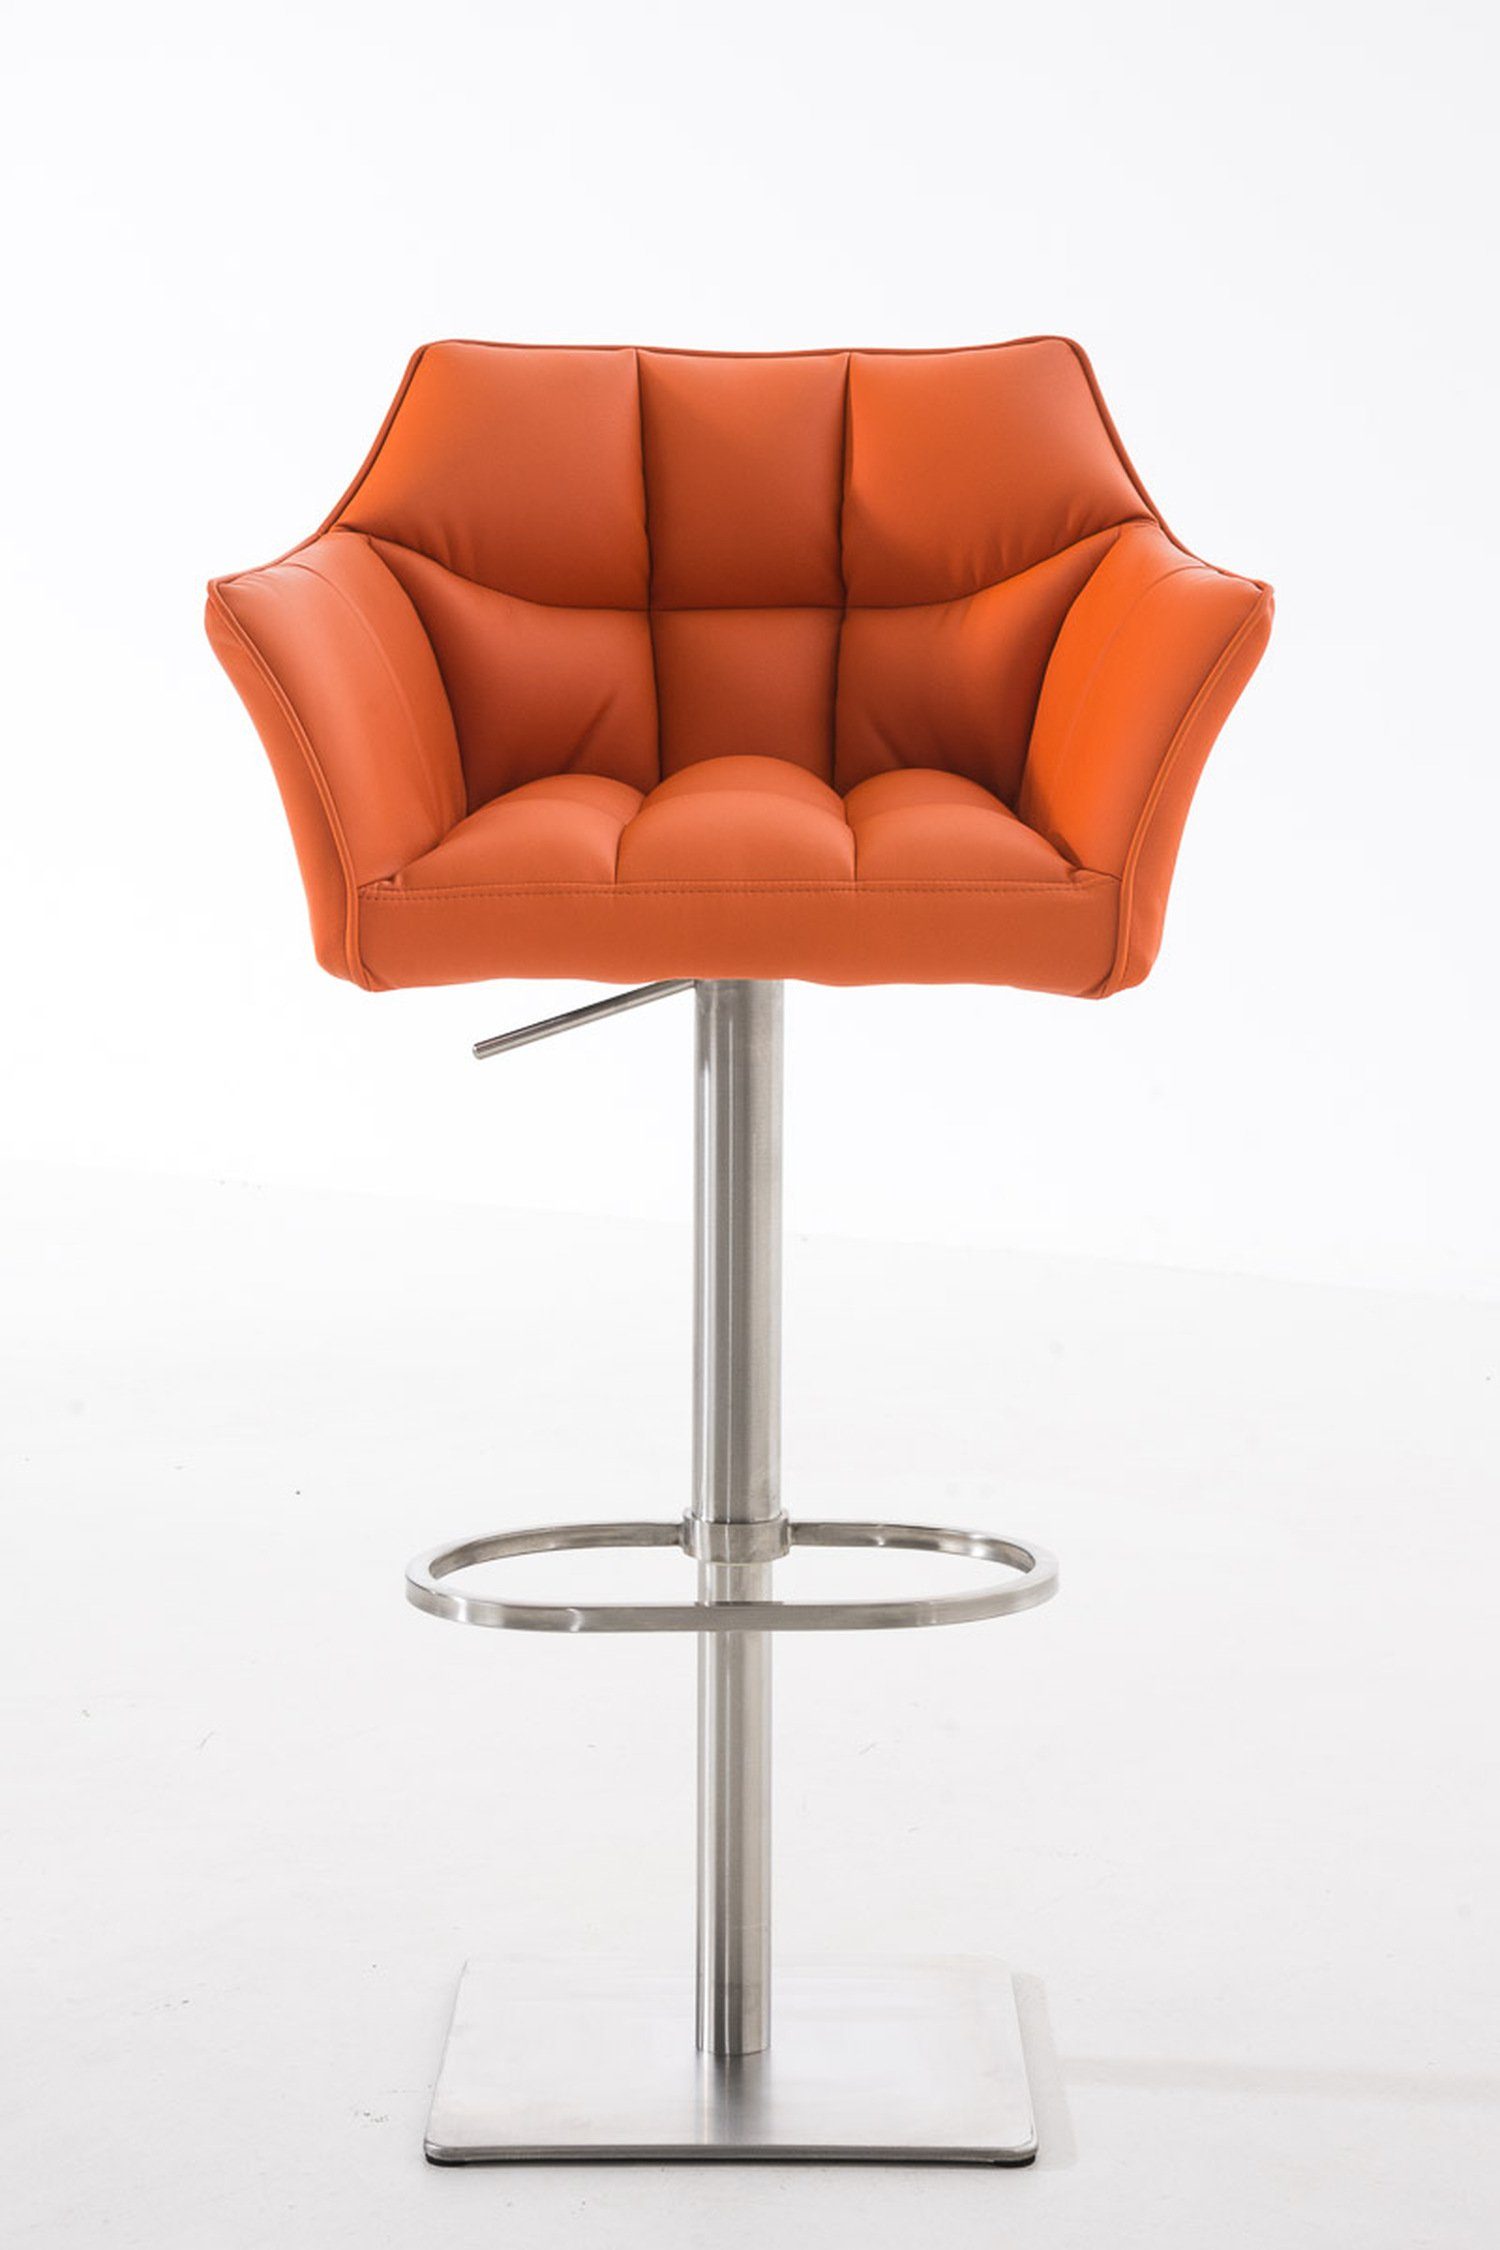 Damaso Hocker Kunstleder für - drehbar und Edelstahl - Gestell Sitzfläche: Theke & Fußstütze Orange (mit Barhocker TPFLiving - Küche), Rückenlehne 360°